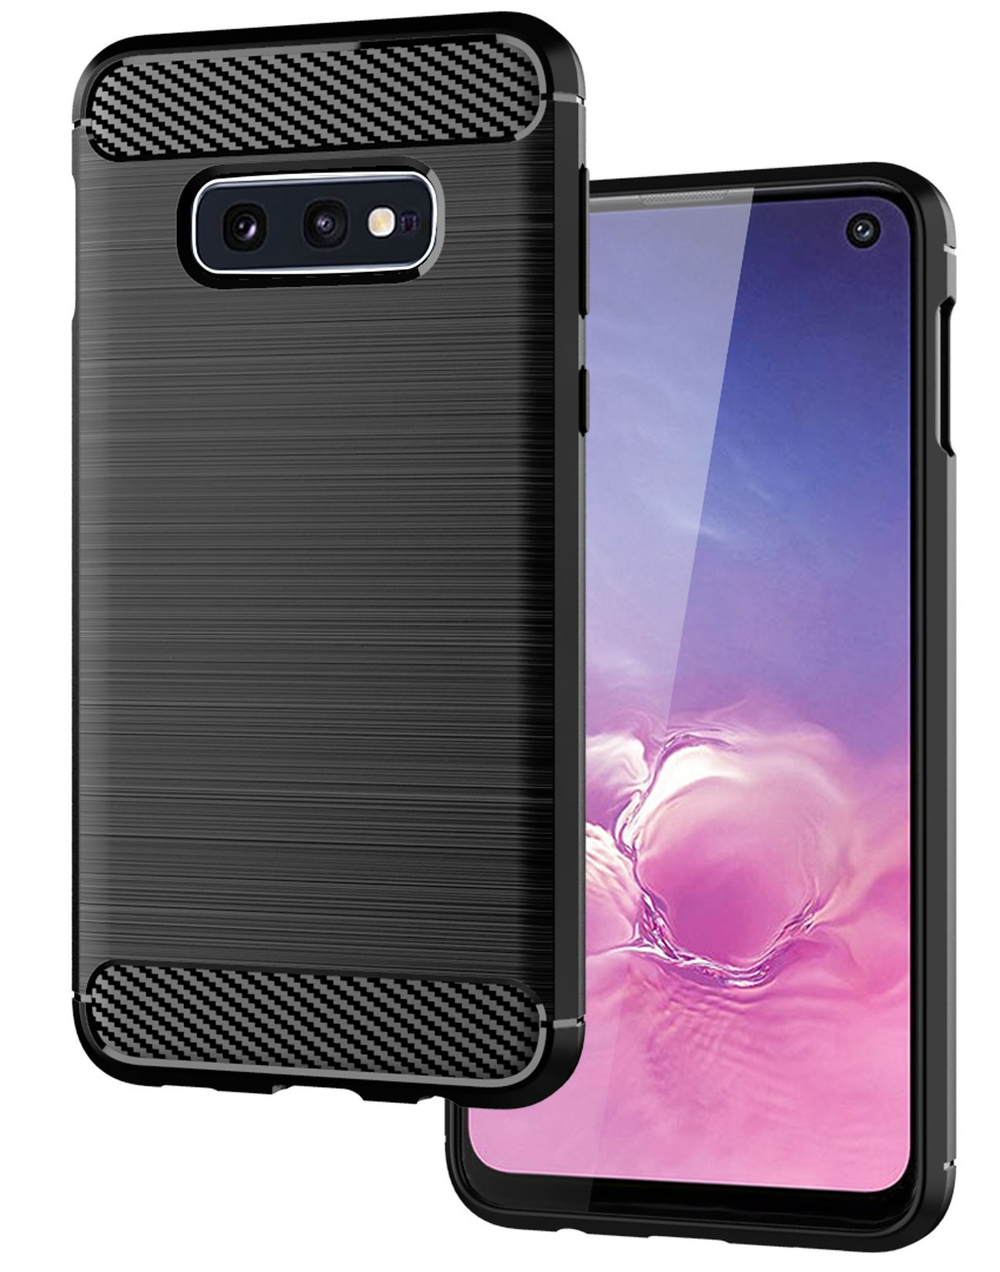 Чехол для Samsung Galaxy S10e цвет Black (черный), серия Carbon от Caseport